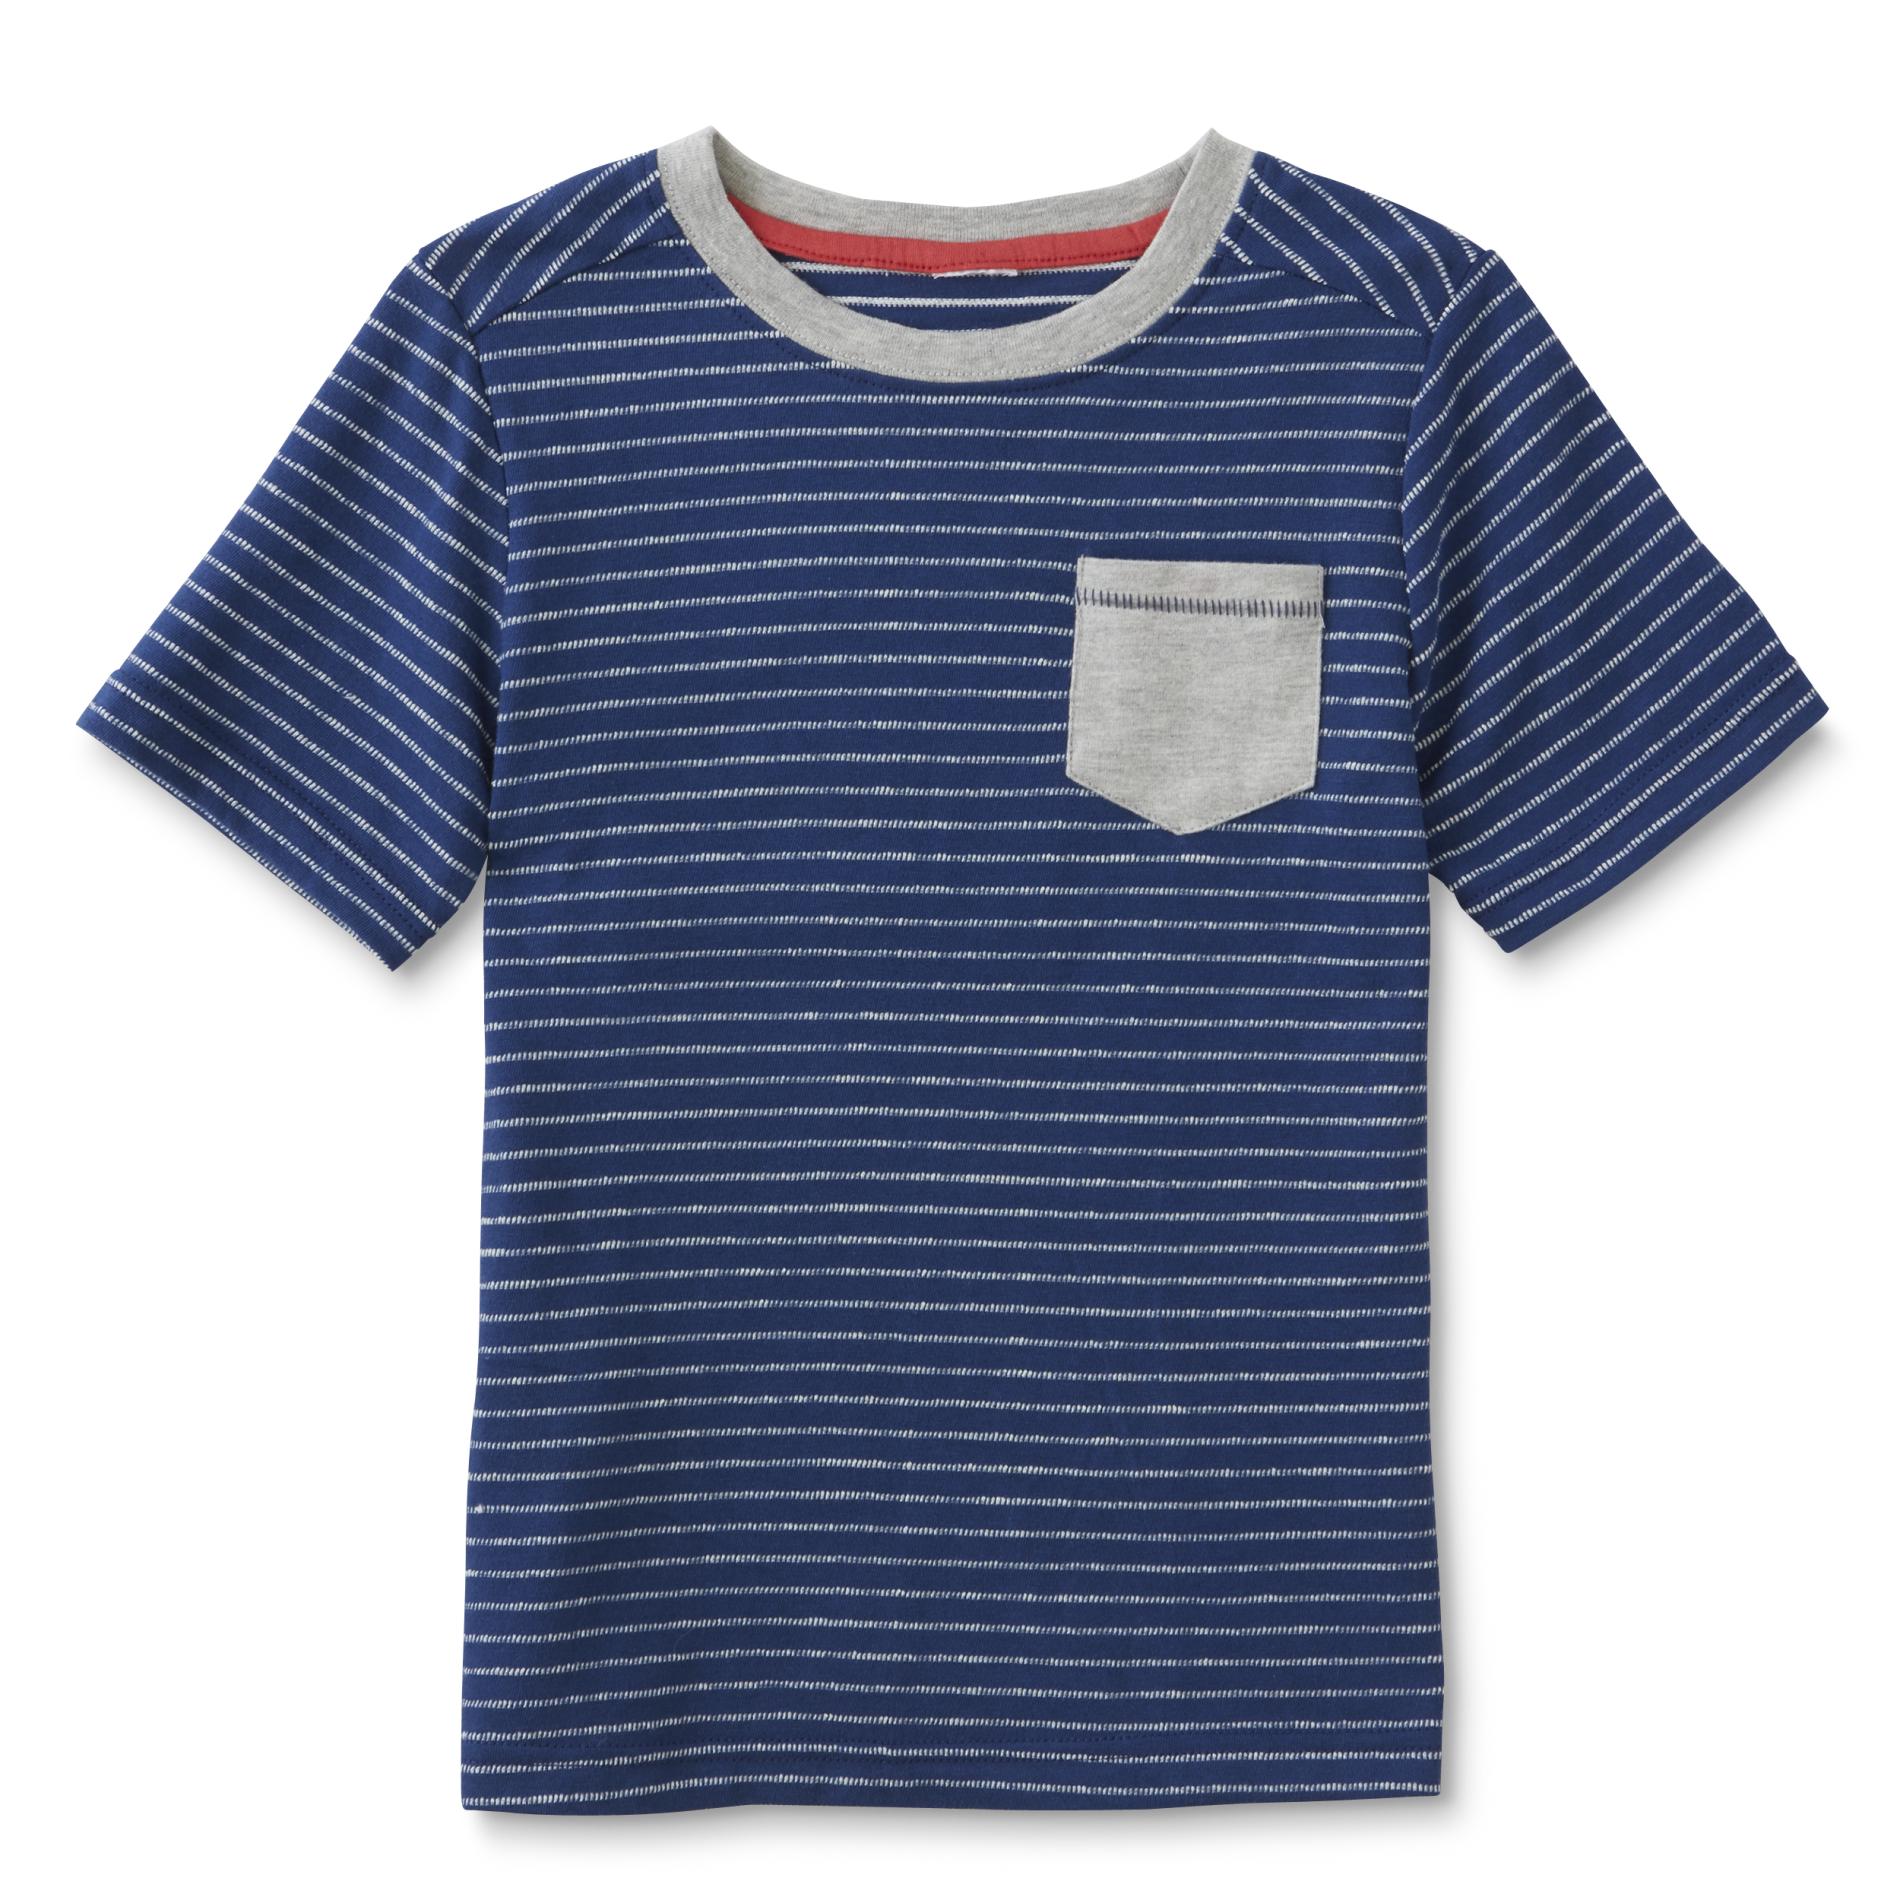 Toughskins Infant & Toddler Boy's Pocket T-Shirt - Striped